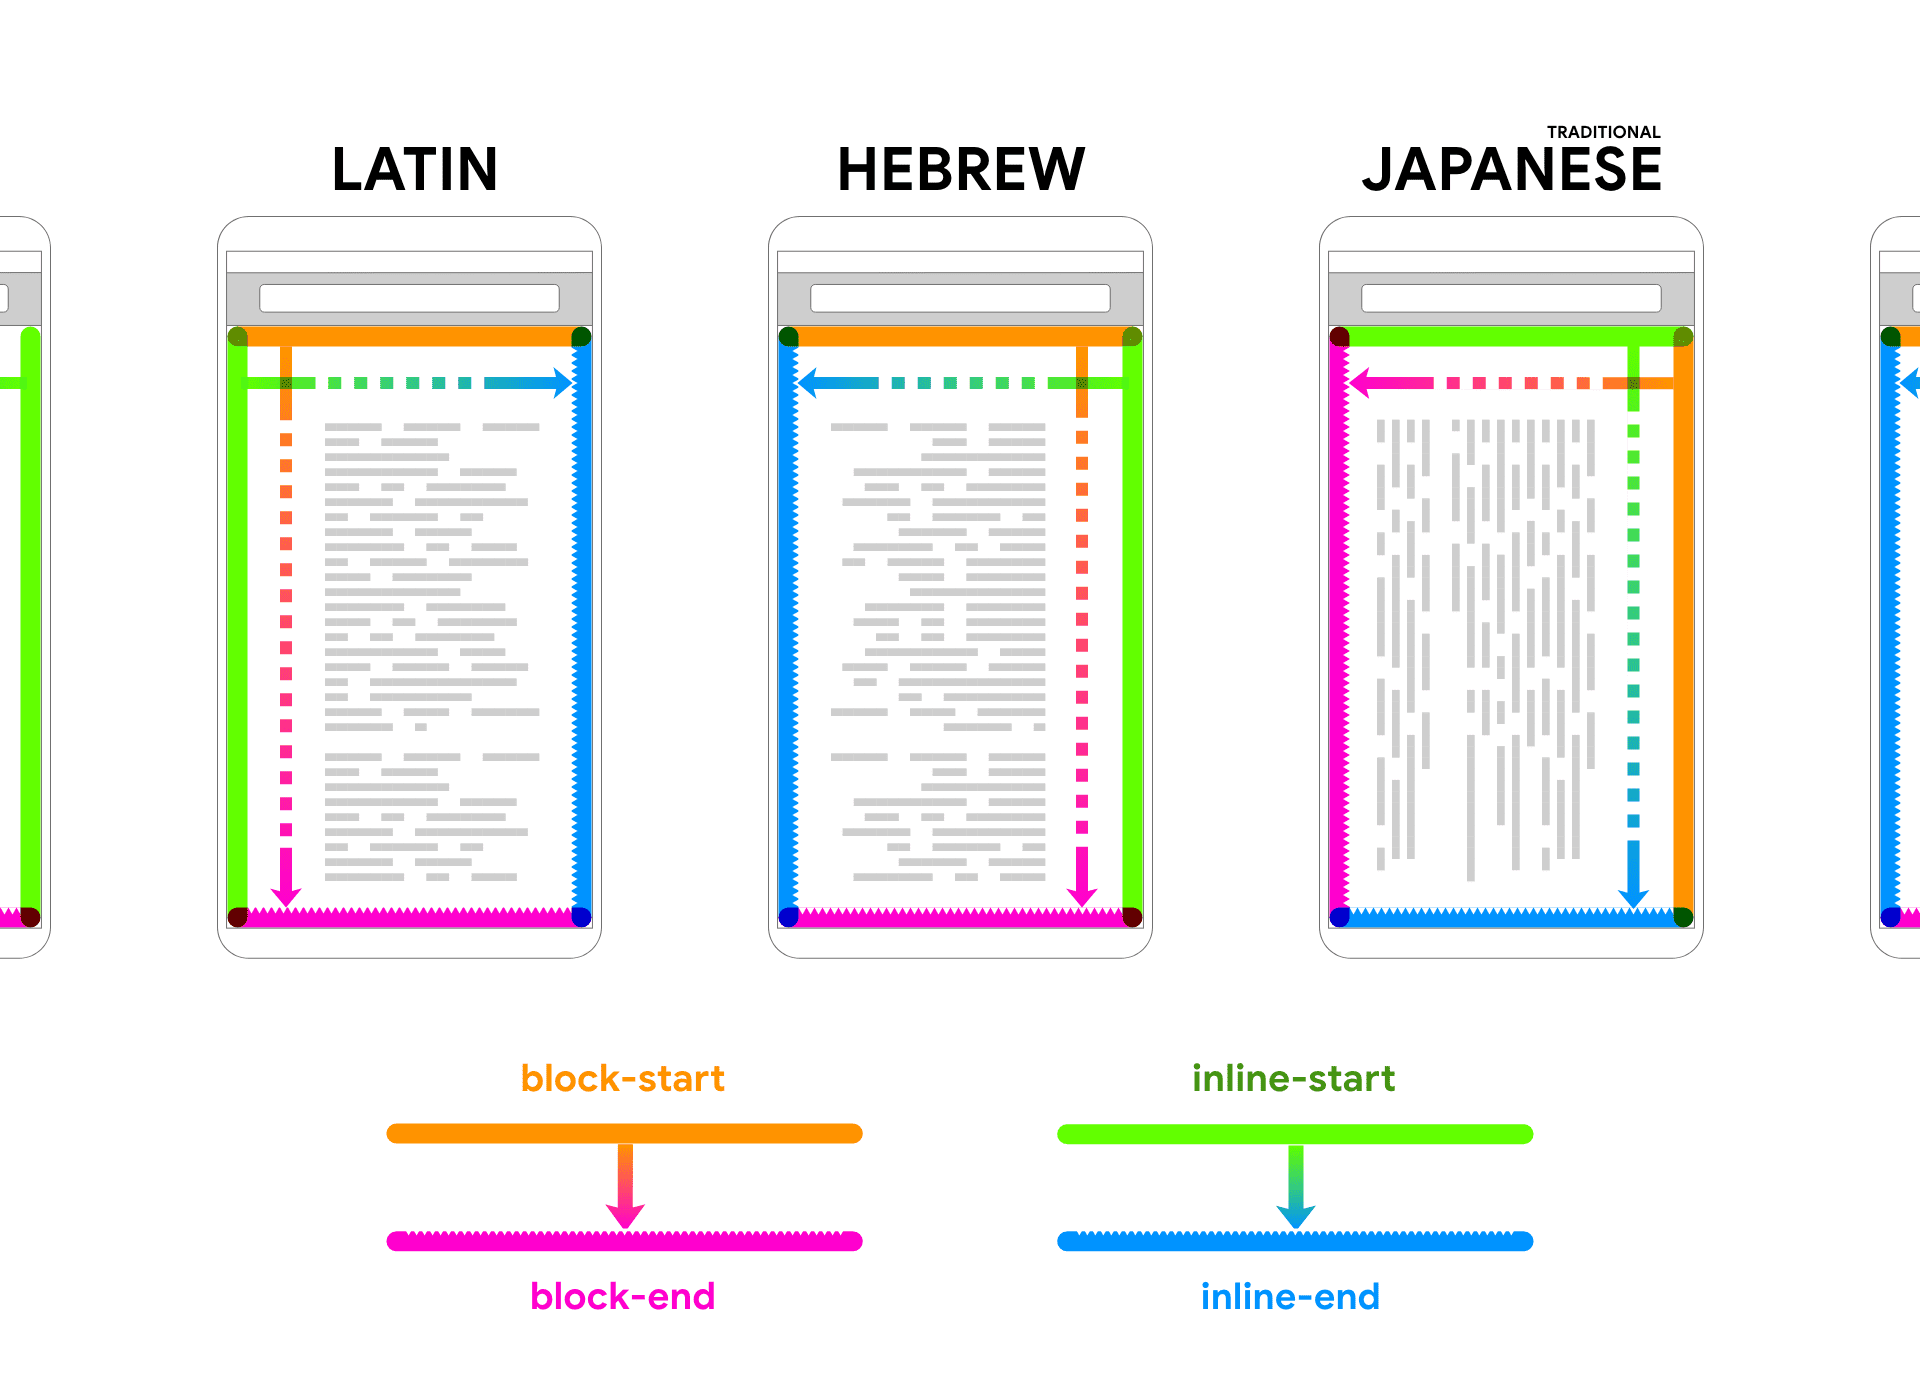 라틴어, 히브리어, 일본어는 기기 프레임 내에 렌더링 자리표시자 텍스트를 표시합니다. 텍스트 다음에 화살표와 색상이 표시되어 블록과 인라인의 두 방향을 연결합니다.